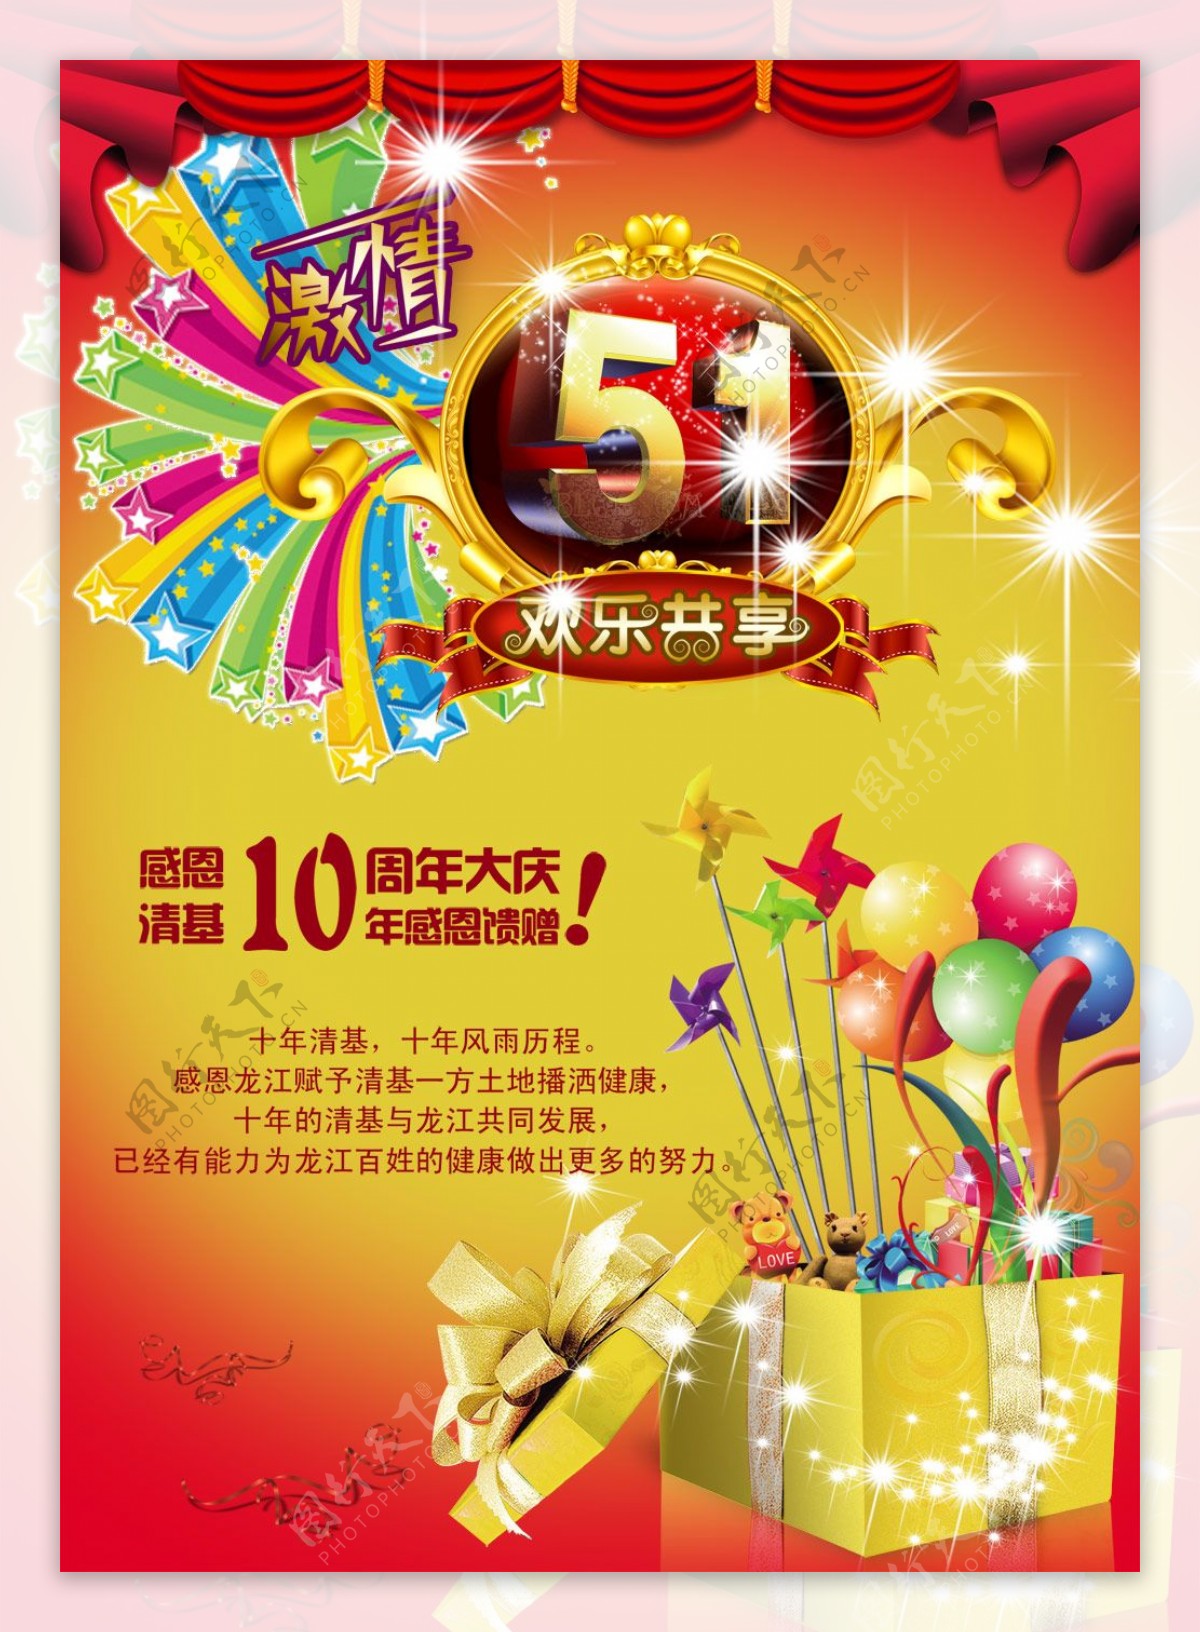 51劳动节及10周年庆海报图片